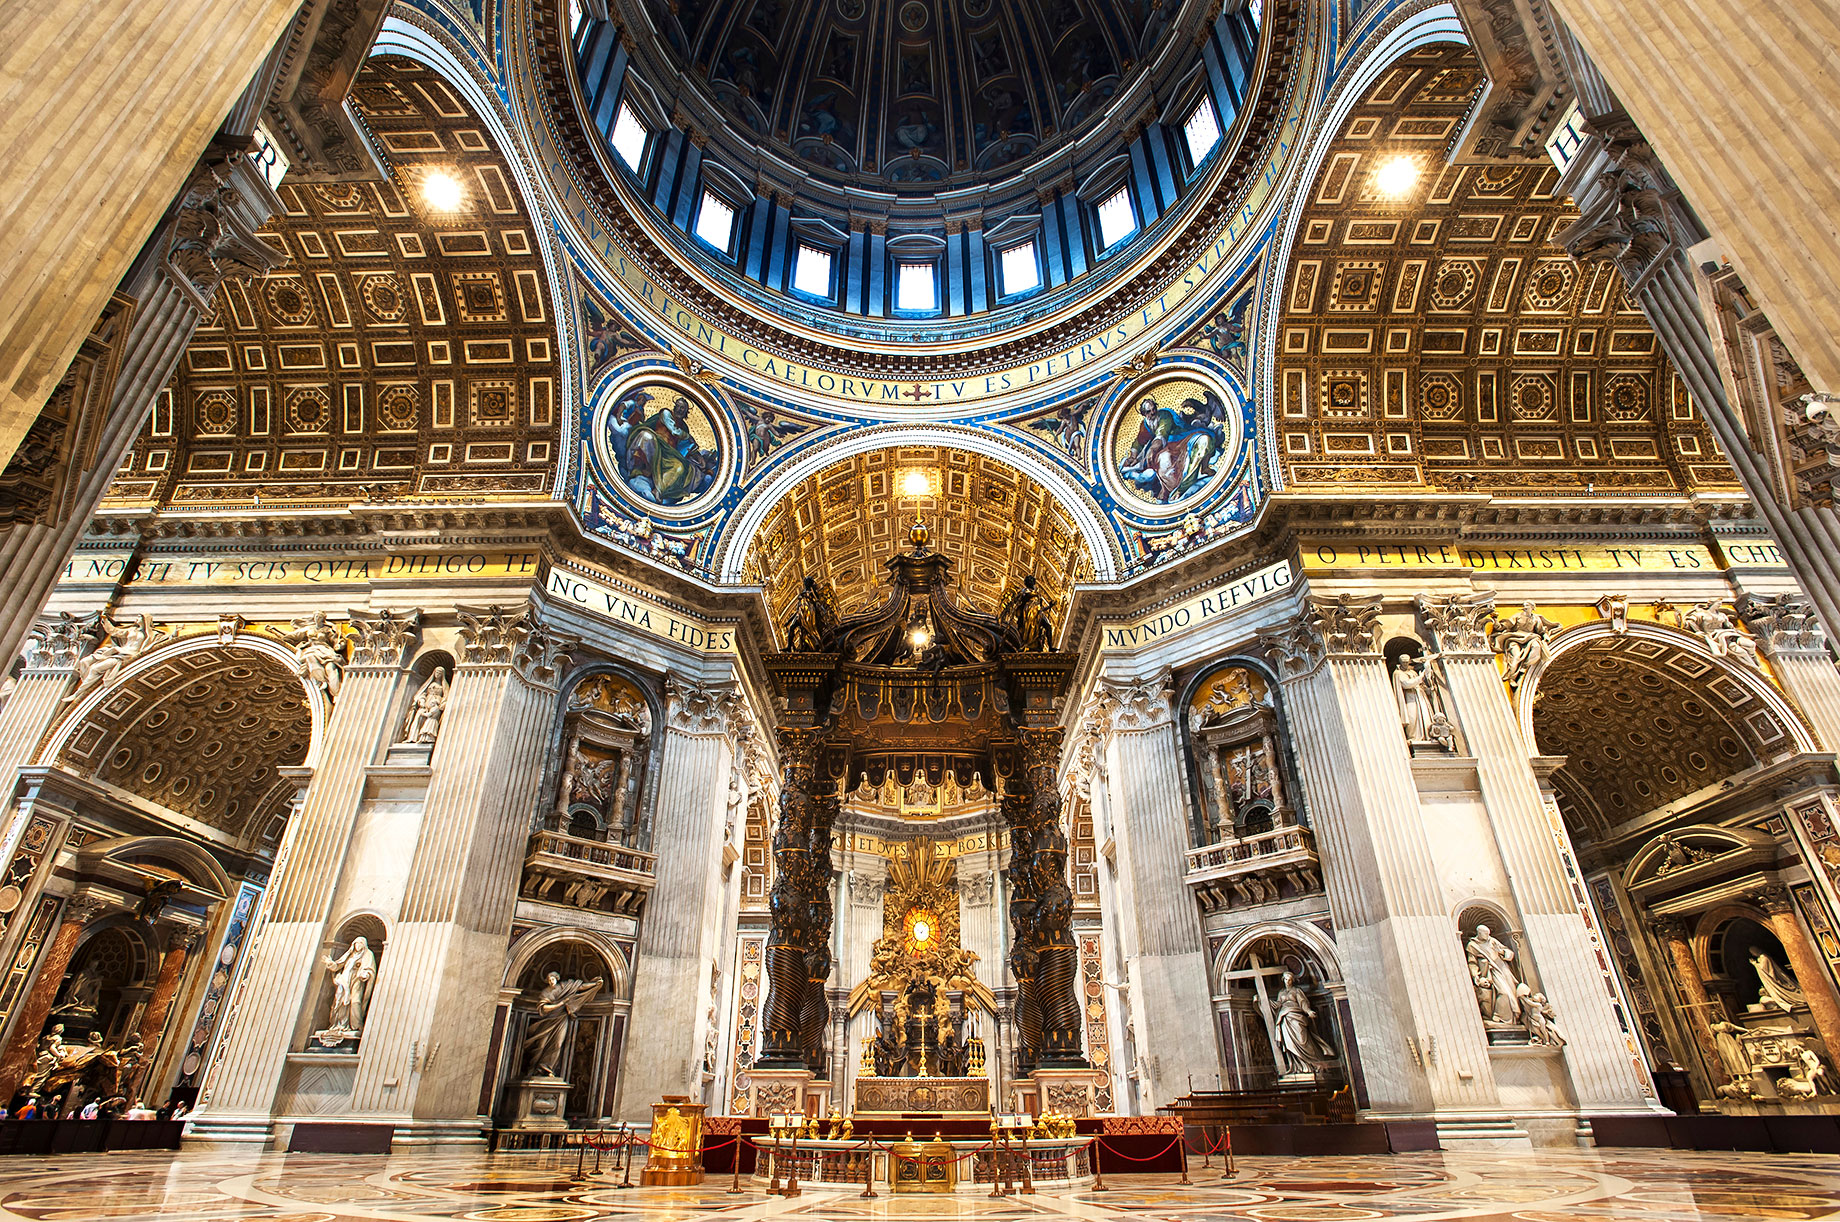 St. Peter's Baldachin - St. Peter's Basilica - Vatican City State